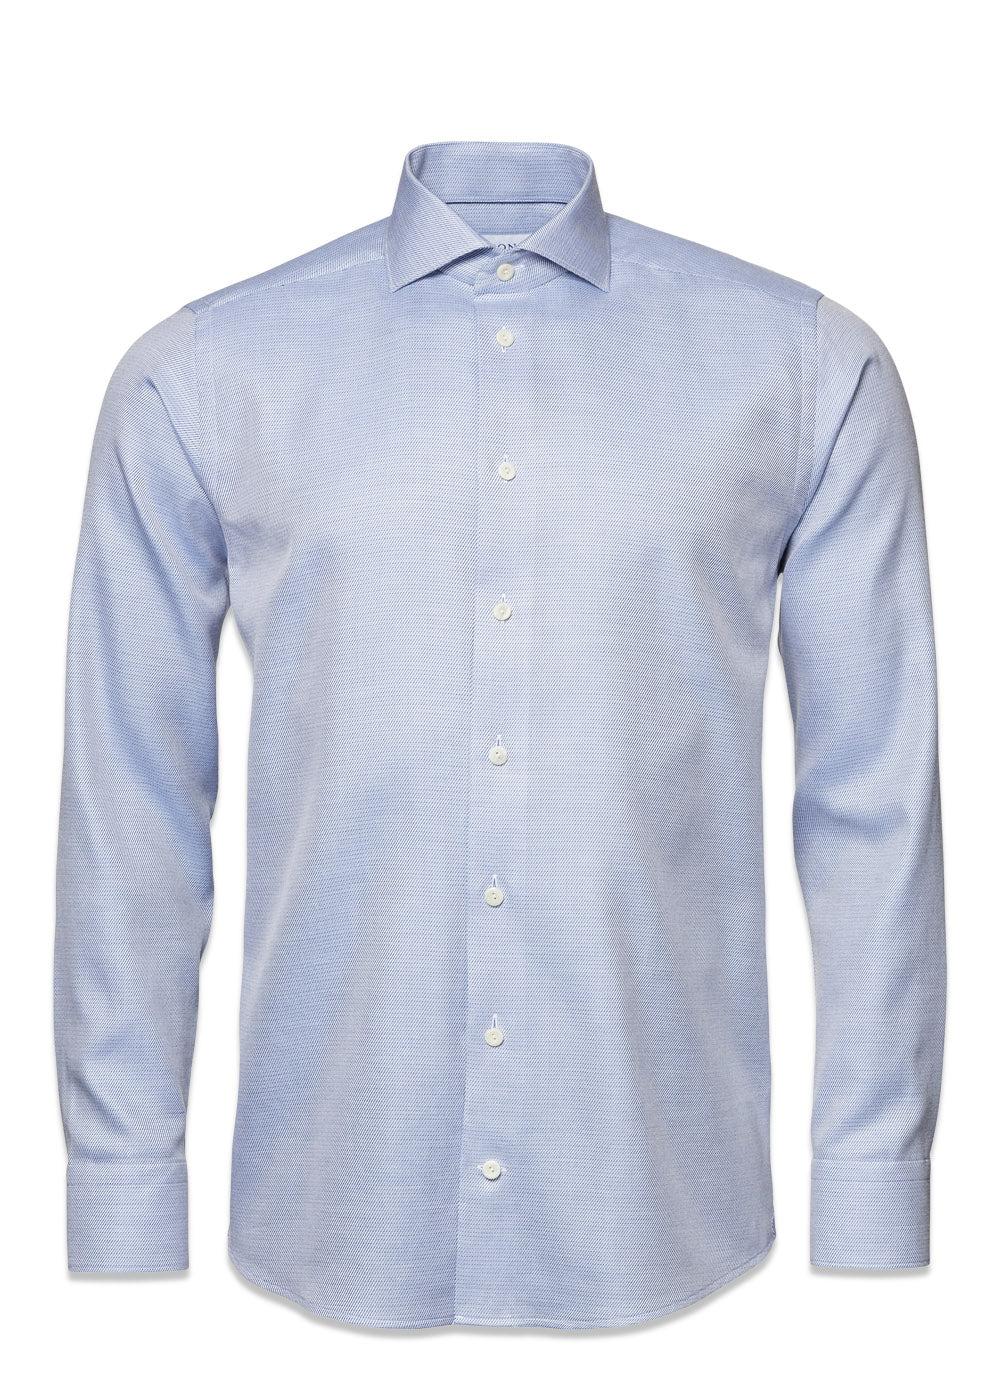 Etons Fine Twill Melange Shirt - Mid Blue. Køb shirts her.